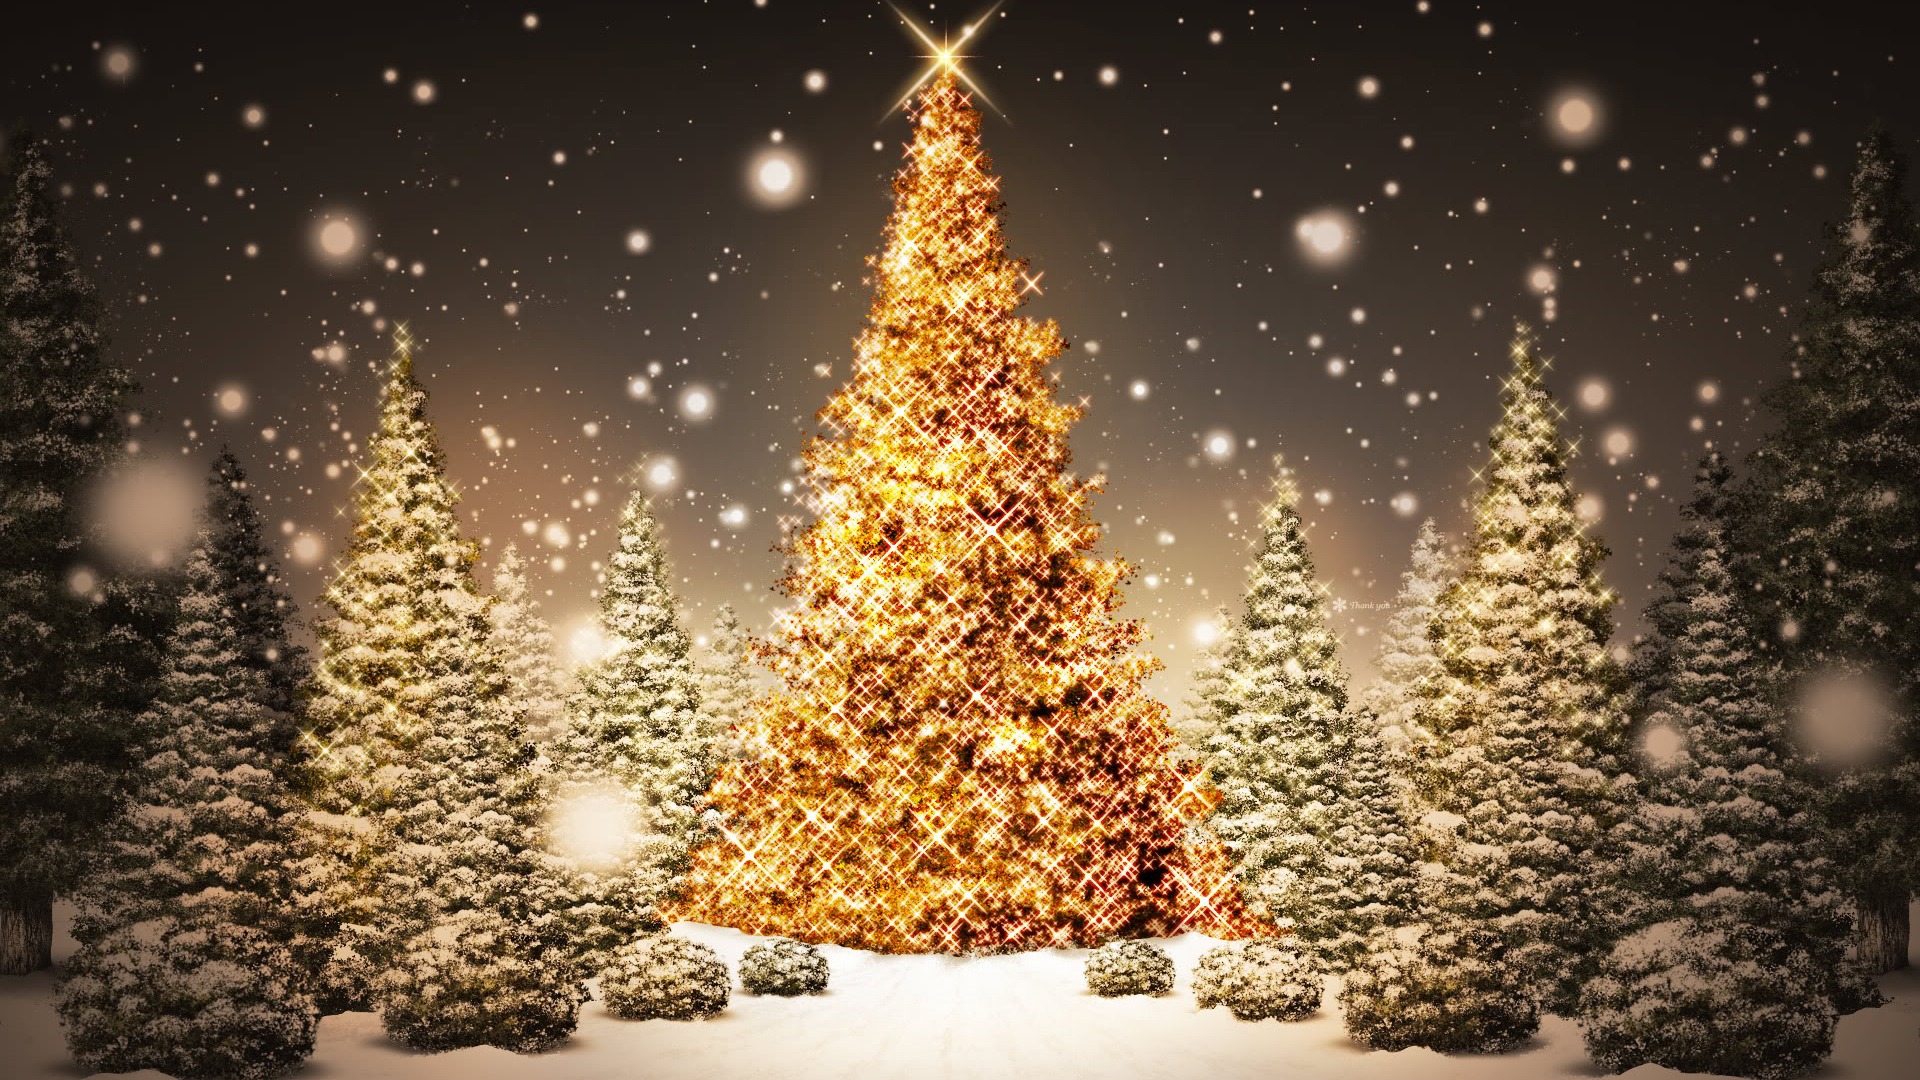 weihnachtsbaum desktop hintergrund,weihnachtsbaum,baum,weihnachtsdekoration,weihnachtsbeleuchtung,heiligabend